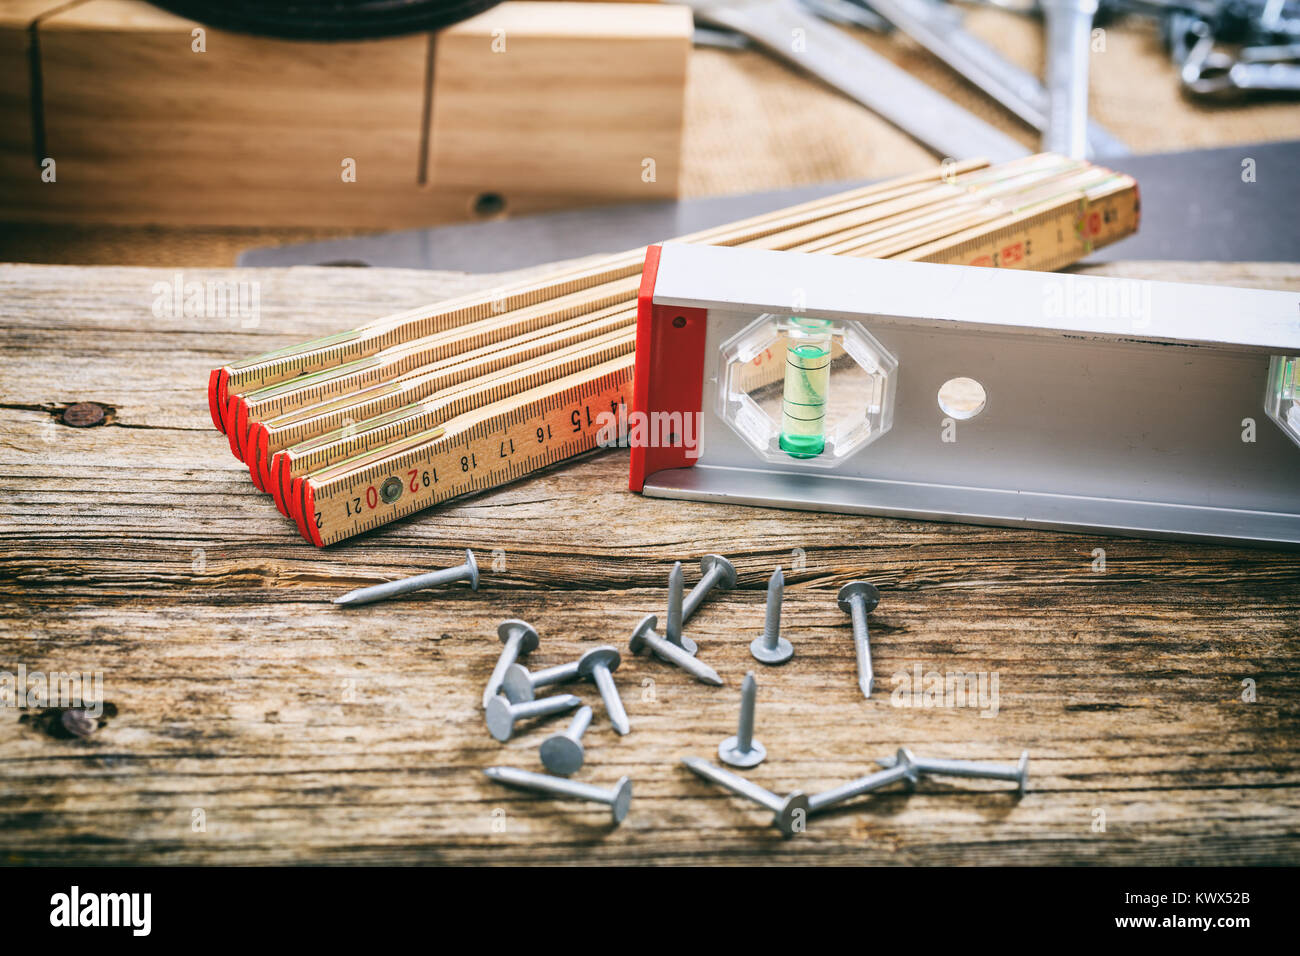 Les outils à mains et ongles sur un banc en bois Banque D'Images